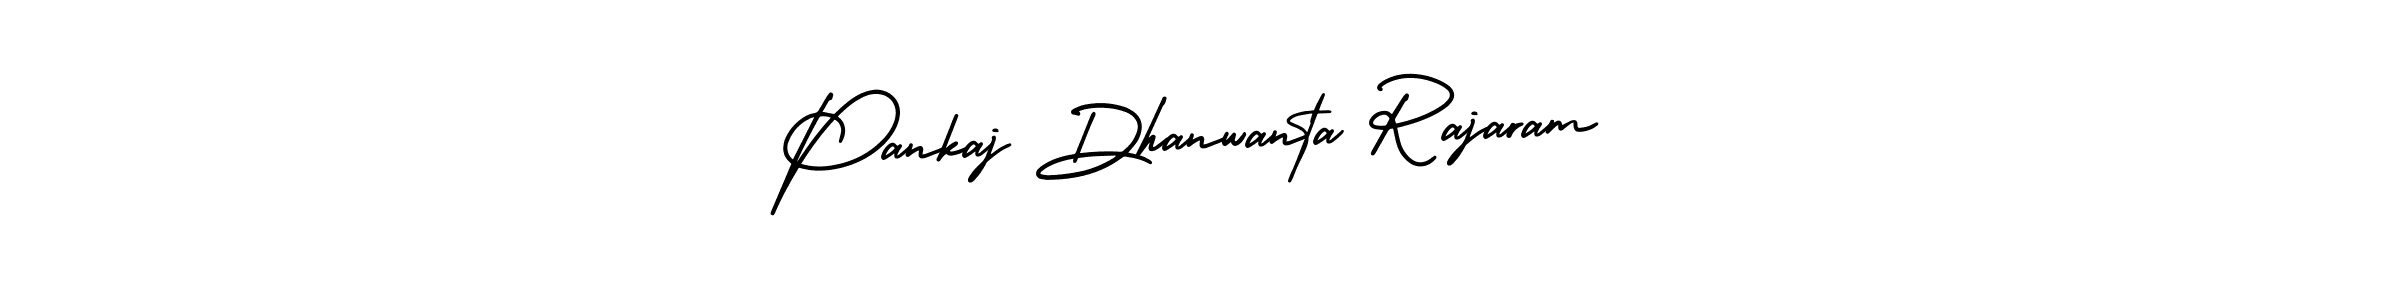 Best and Professional Signature Style for Pankaj Dhanwanta Rajaram. AmerikaSignatureDemo-Regular Best Signature Style Collection. Pankaj Dhanwanta Rajaram signature style 3 images and pictures png